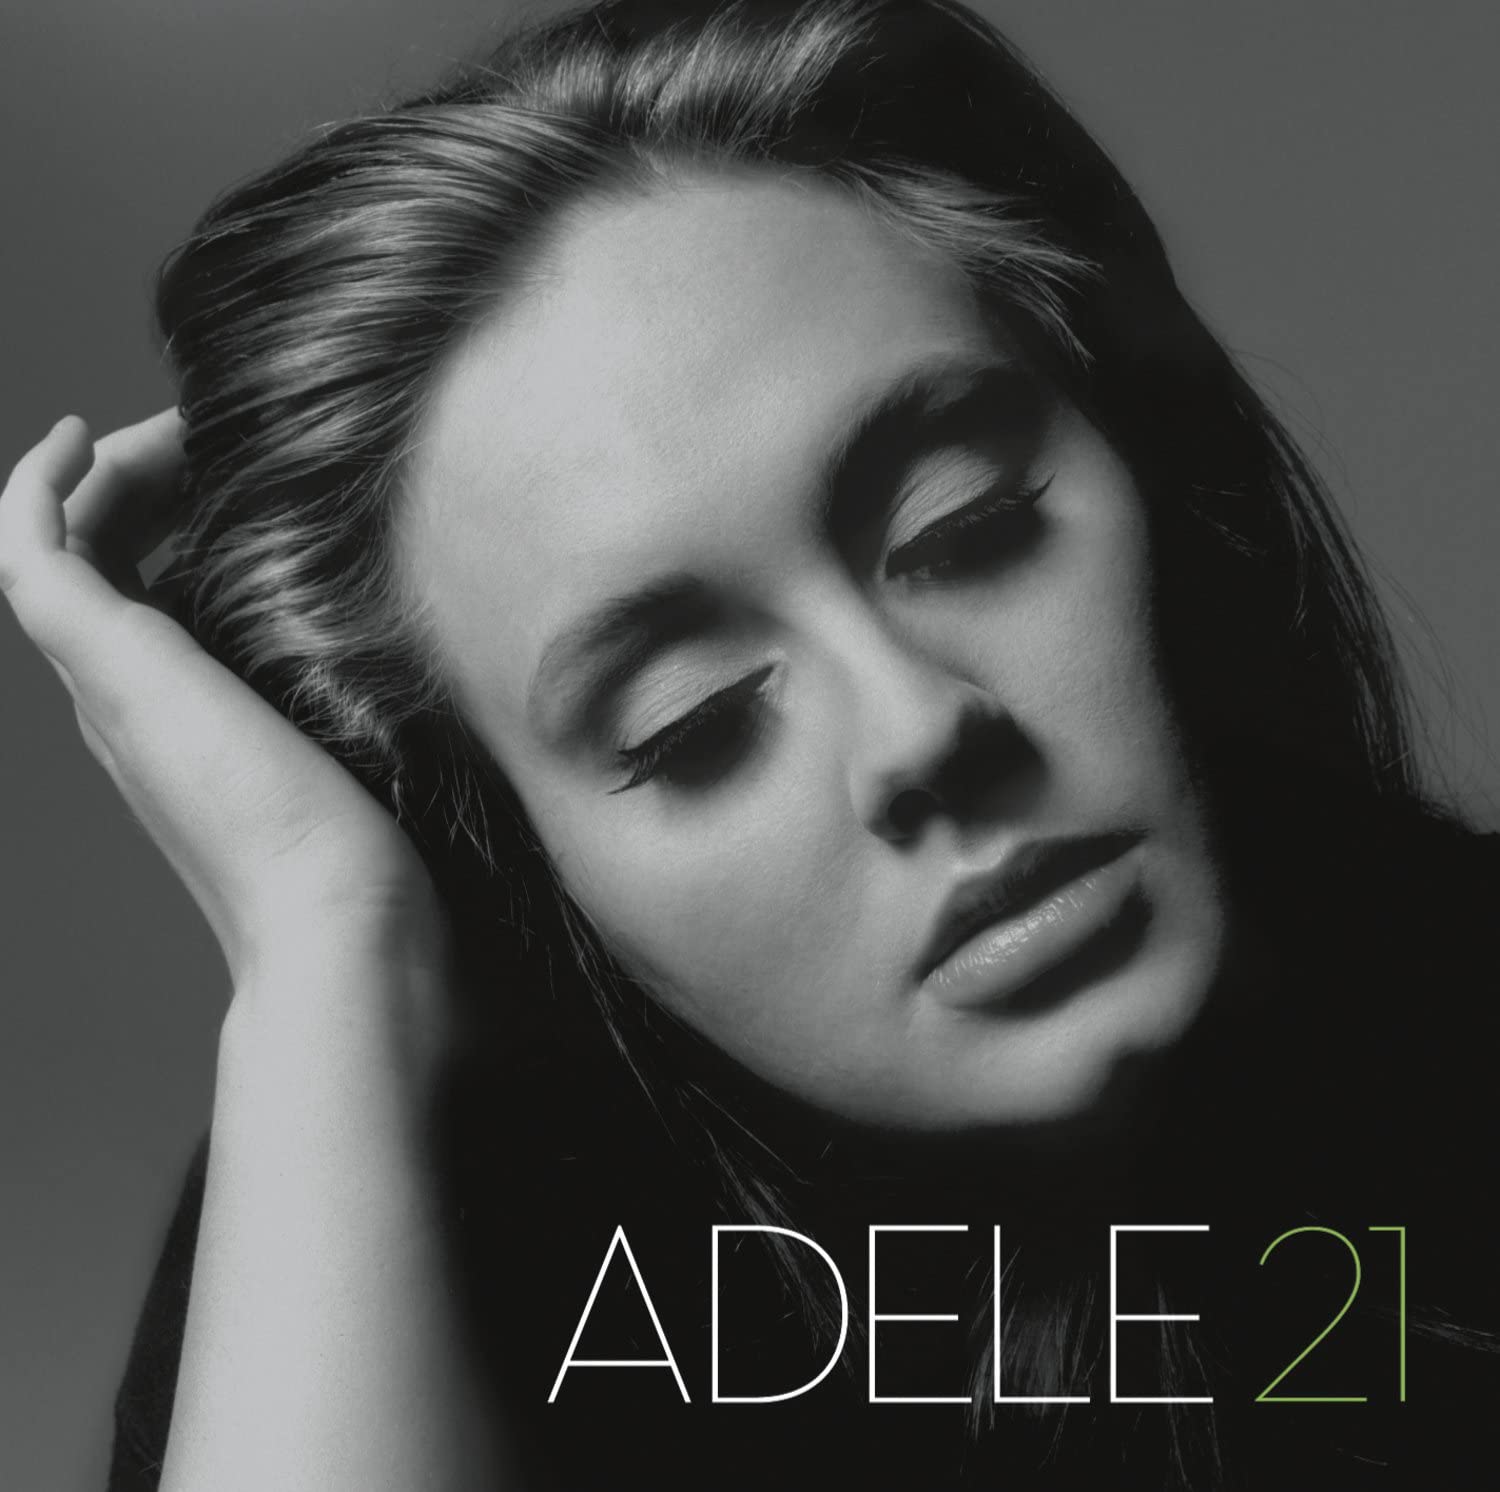 Capa do álbum 21 da Adele. Ele mostra o rosto da cantora de olhos fechados. Ela tem os cabelos soltos e penteados para trás, pele clara e a mão apoiando a cabeça. A imagem é em preto e branco com o número 21 em verde.